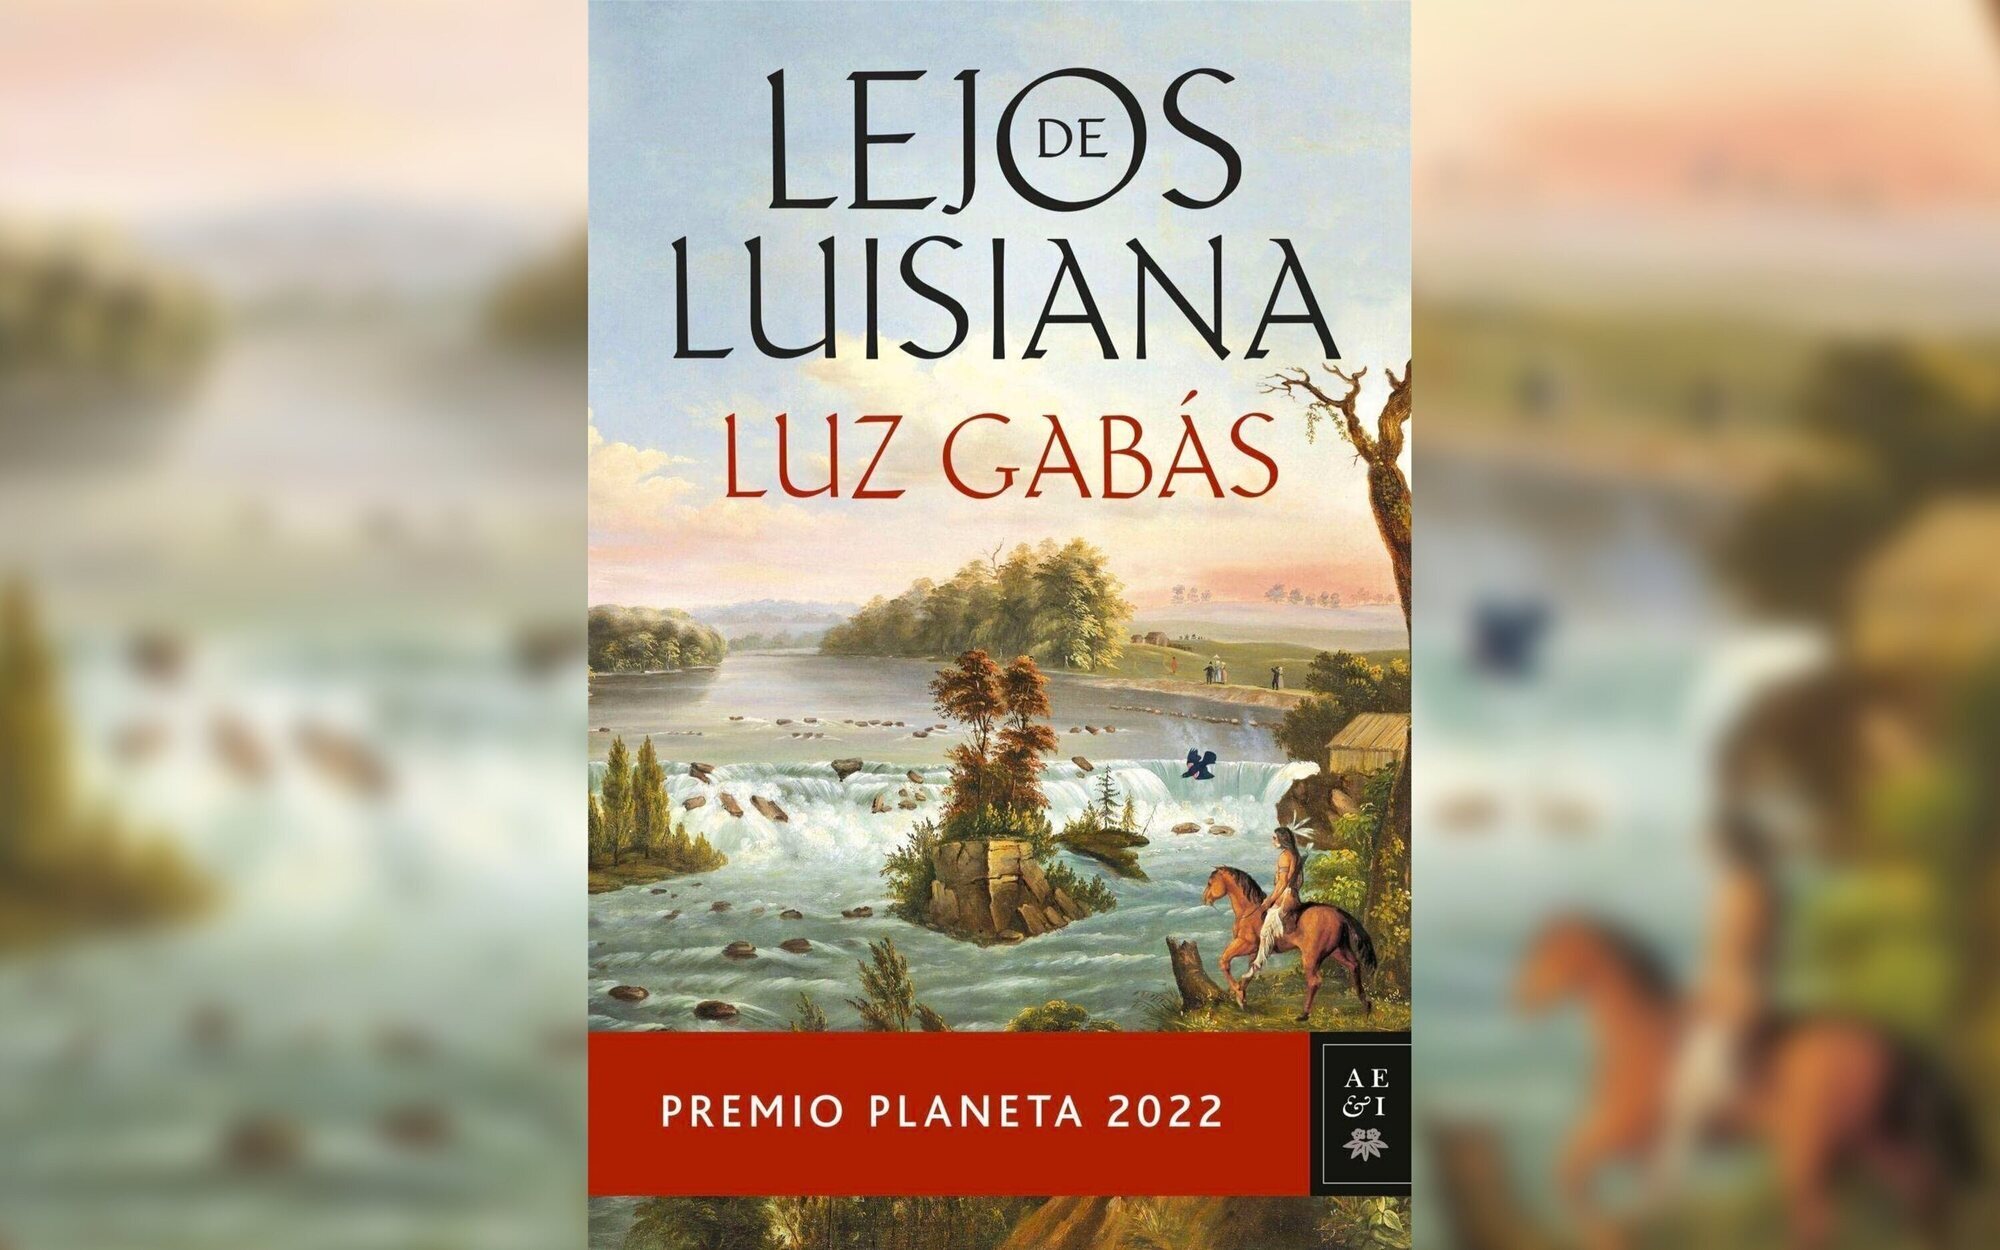 De Premio Planeta 2022 a serie de televisión: "Lejos de Luisiana", de Luz Gabás, será adaptada por Plano a Plano